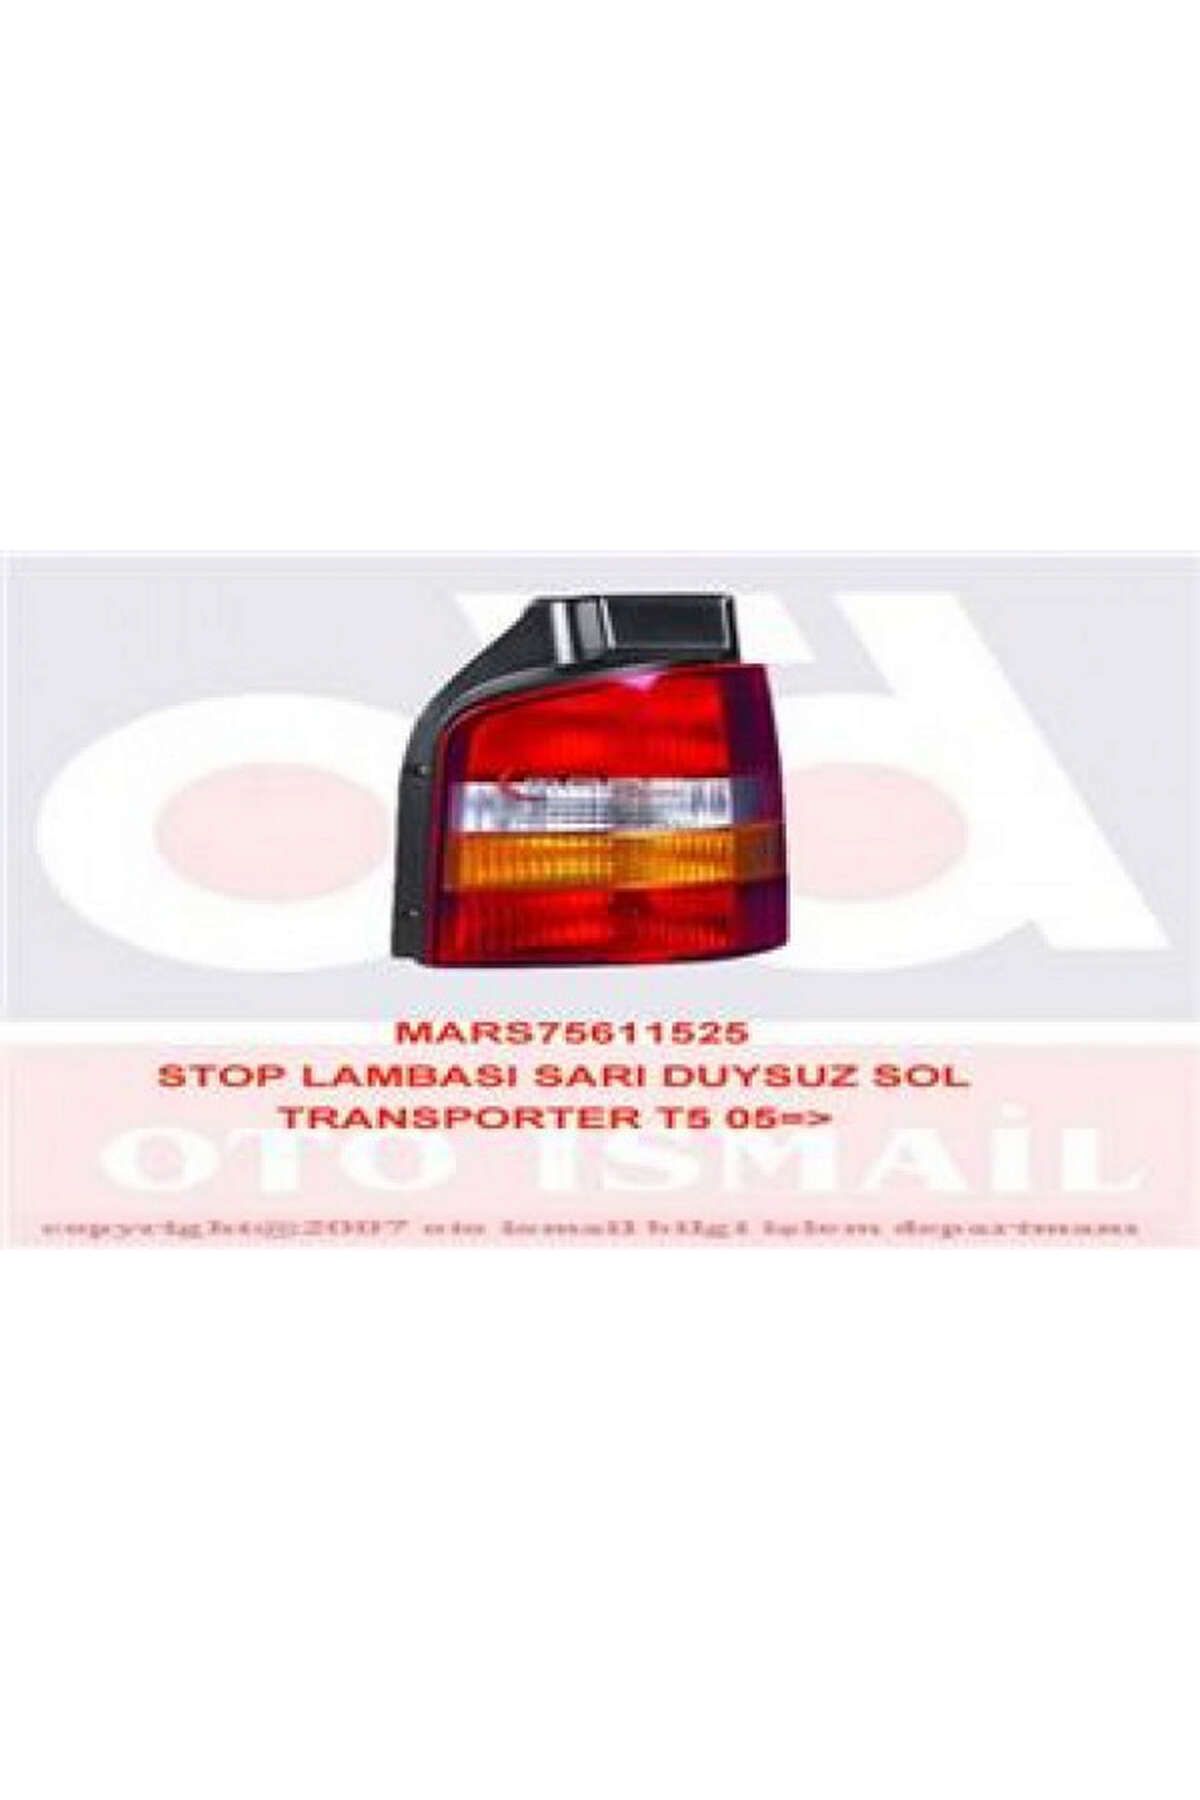 Mars Stop Lambası Sol Duysuz Volkswagen Transporter T5 03-09 Sarı 313105